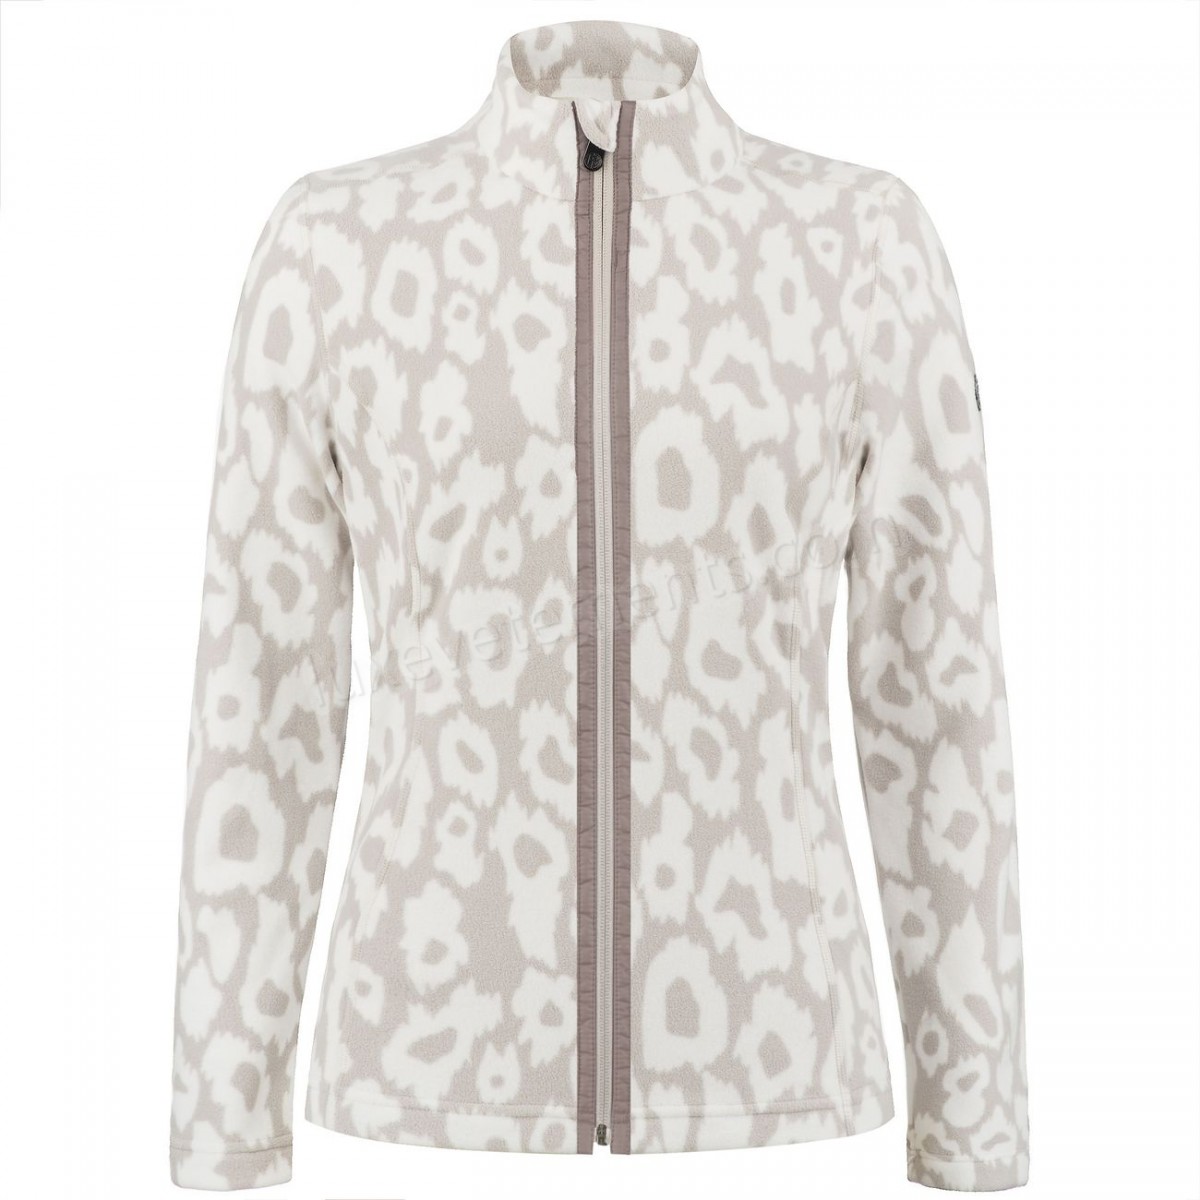 Poivre Blanc-Sports d'hiver femme POIVRE BLANC Veste Polaire Poivre Blanc Fleece Jacket 1500 Panther Grey Femme Vente en ligne - -1